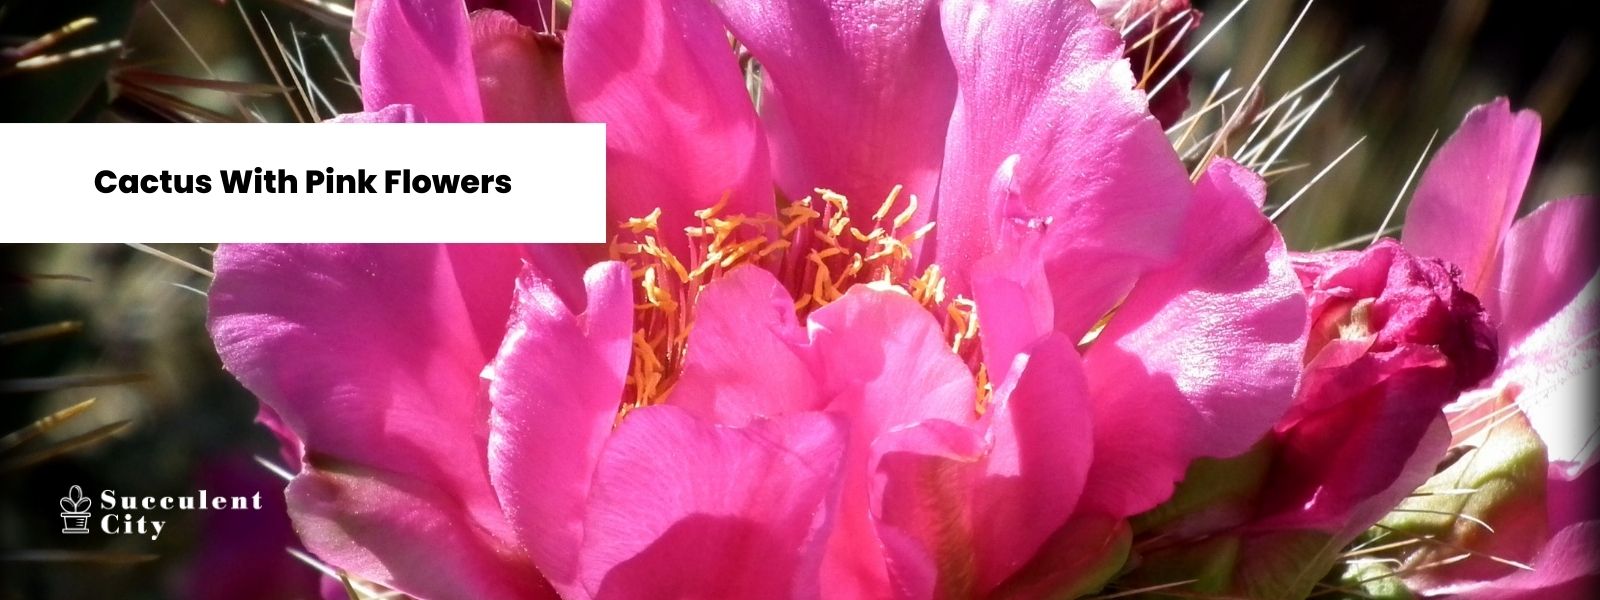 Una delicada lista de dijes con cactus con flores rosas.